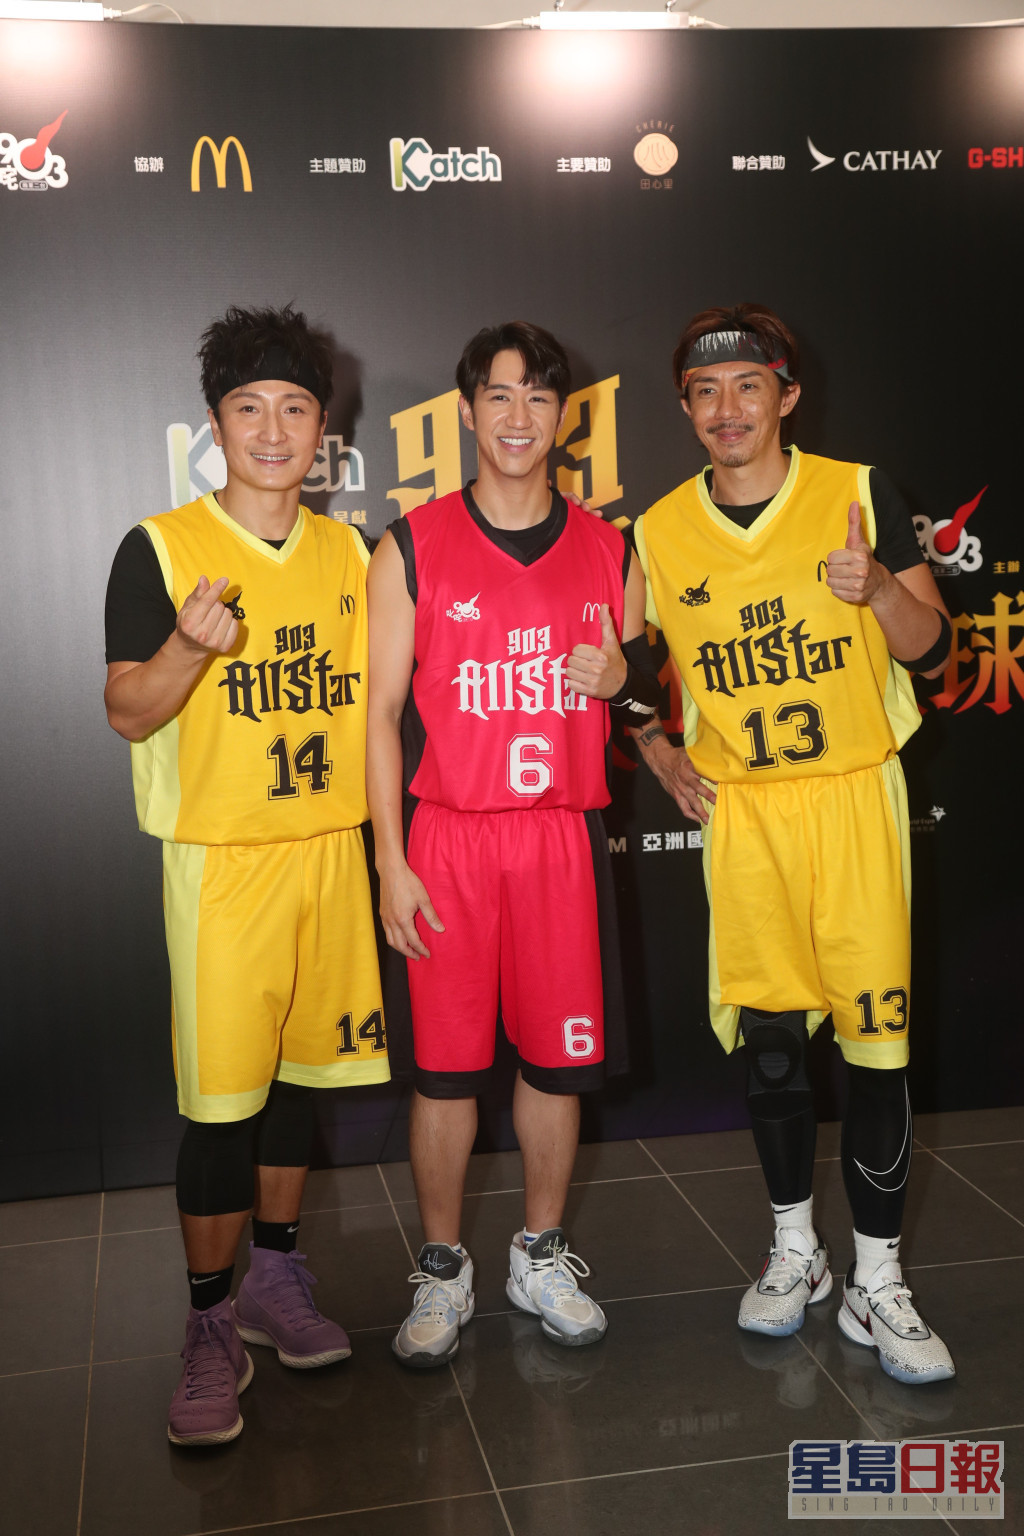 張繼聰（阿聰）、方力申（小方）及馮允謙（Jay）昨日(11日)到機場博覽館分別代表歌星隊及DJ隊的籃球賽。